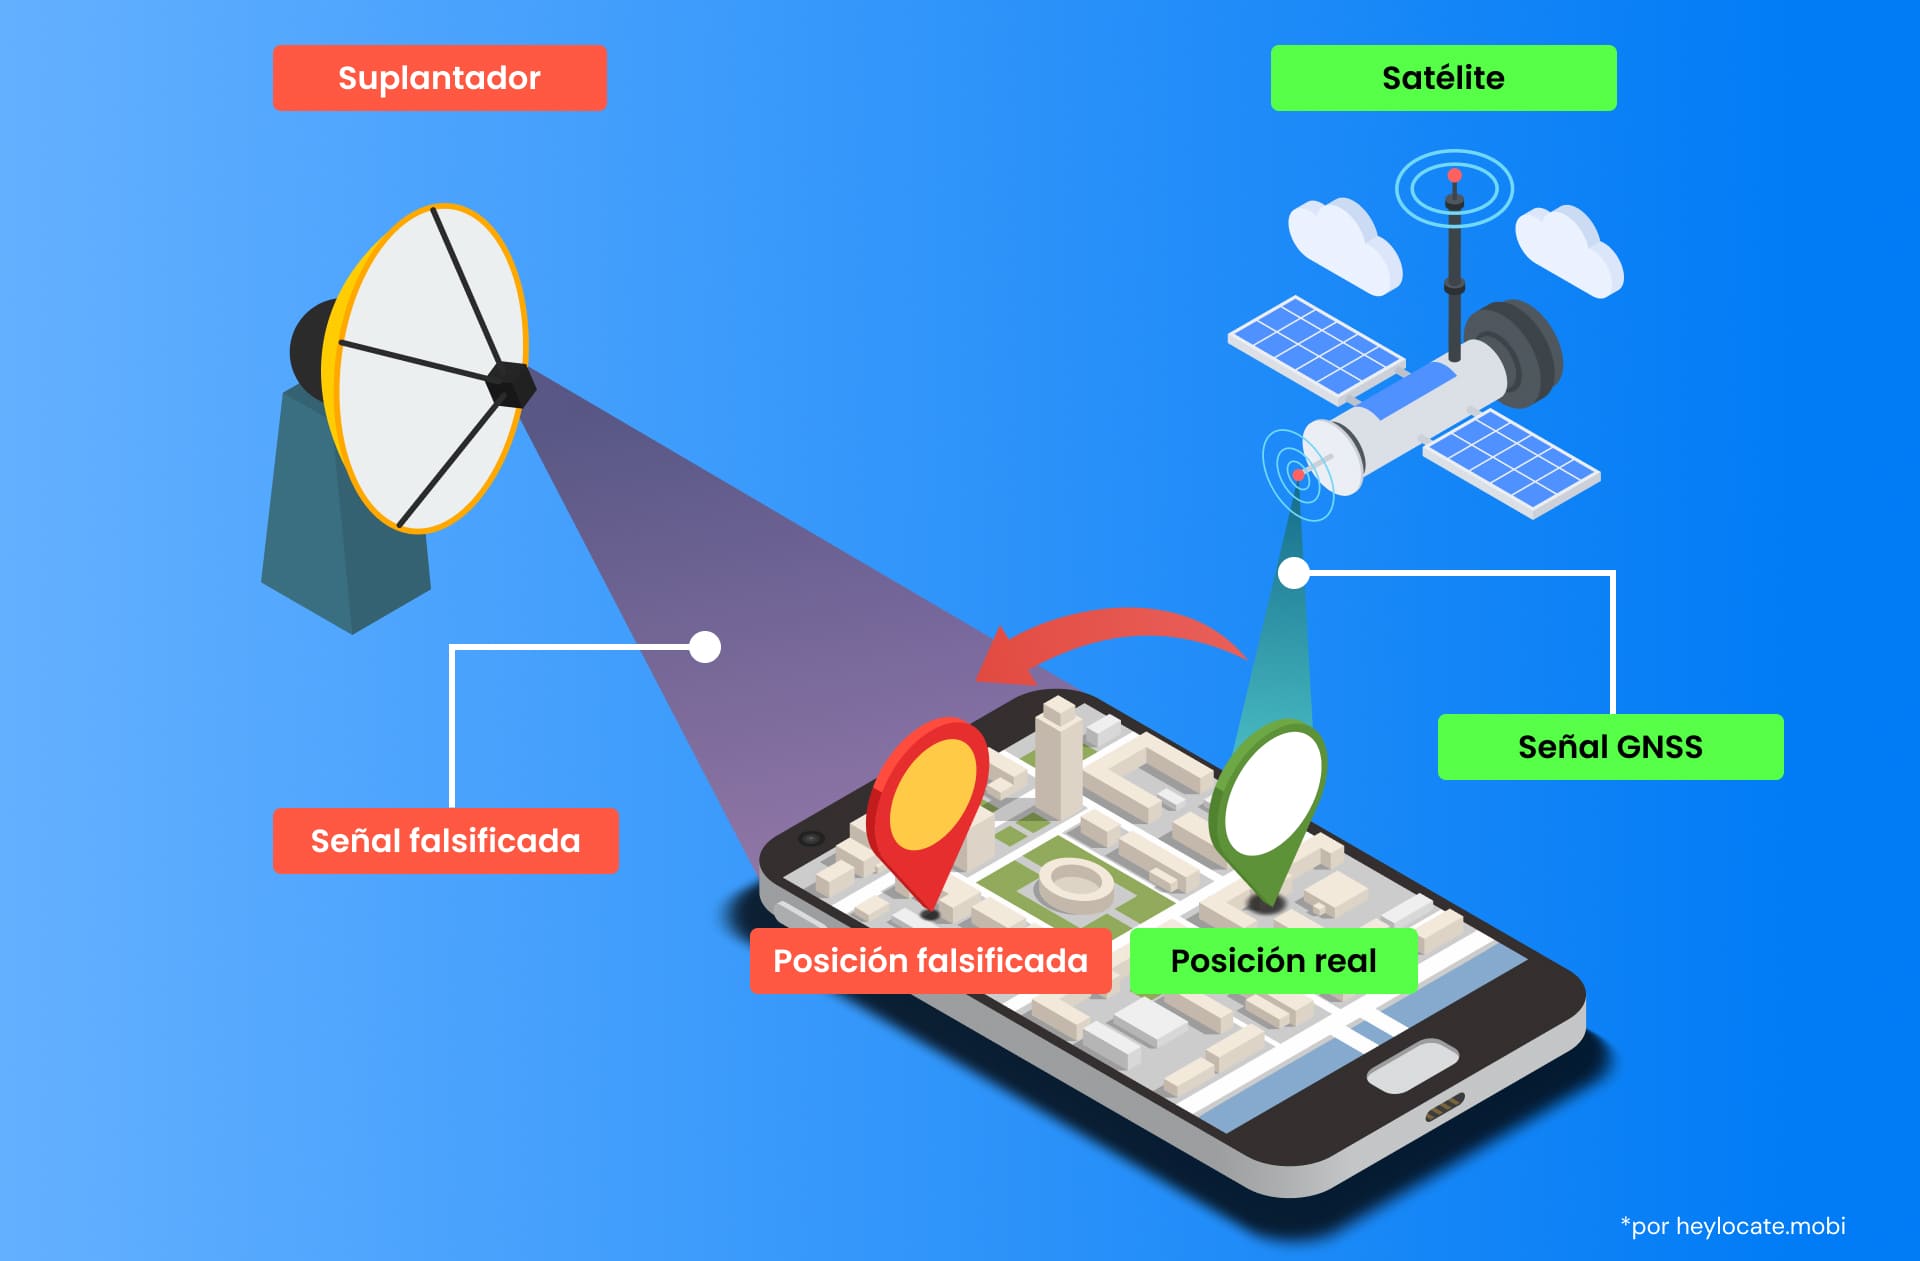 Illustrazione che mostra uno smartphone che riceve un segnale GNSS reale da un satellite e un segnale di spoofing da uno spoofer, mostrando che le posizioni reali sono sostituite da quelle false.